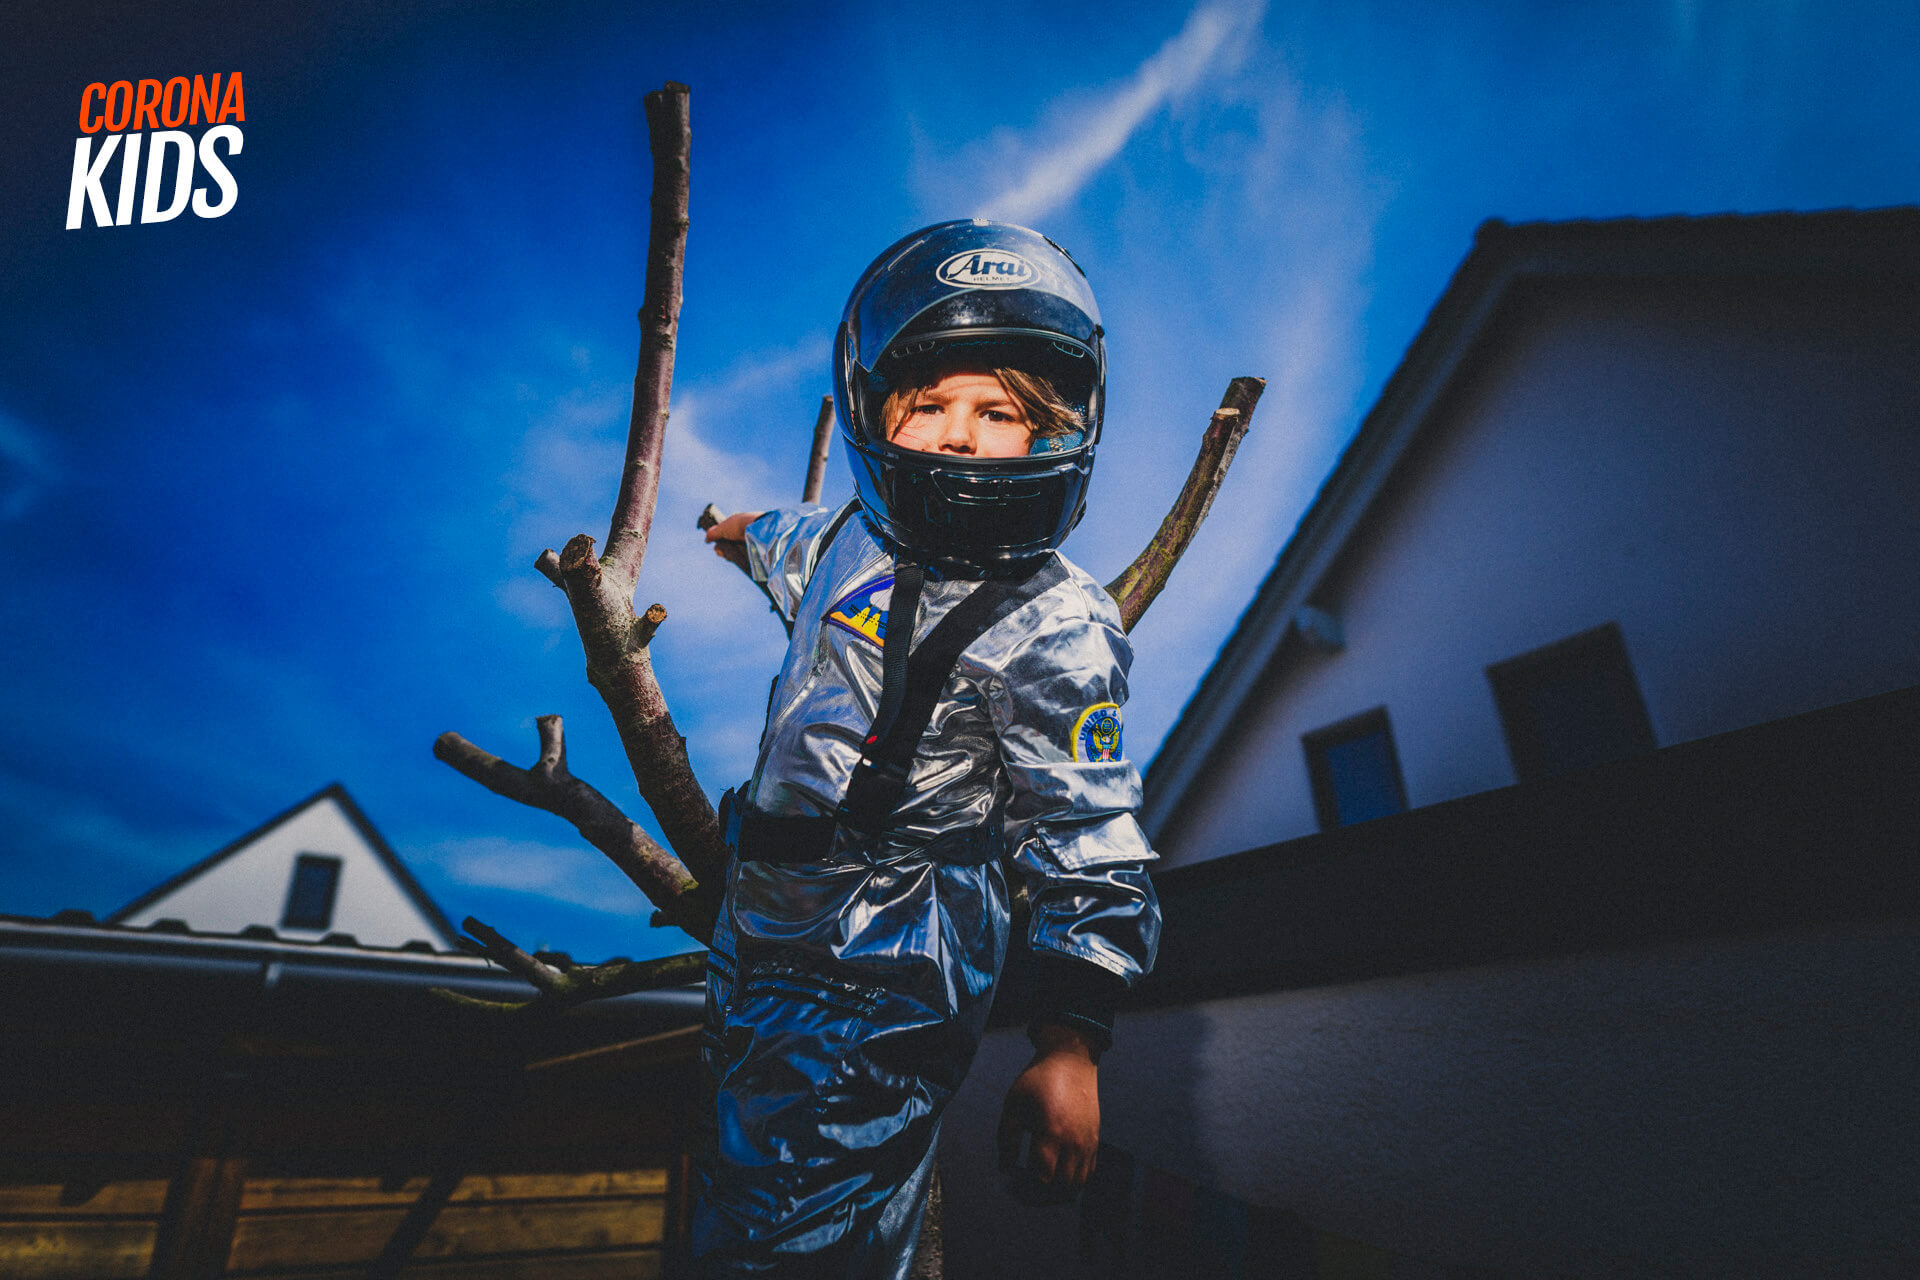 corona-kids - ein corona-fotoprojekt uber kinder und jugendliche in der corona-pandemie